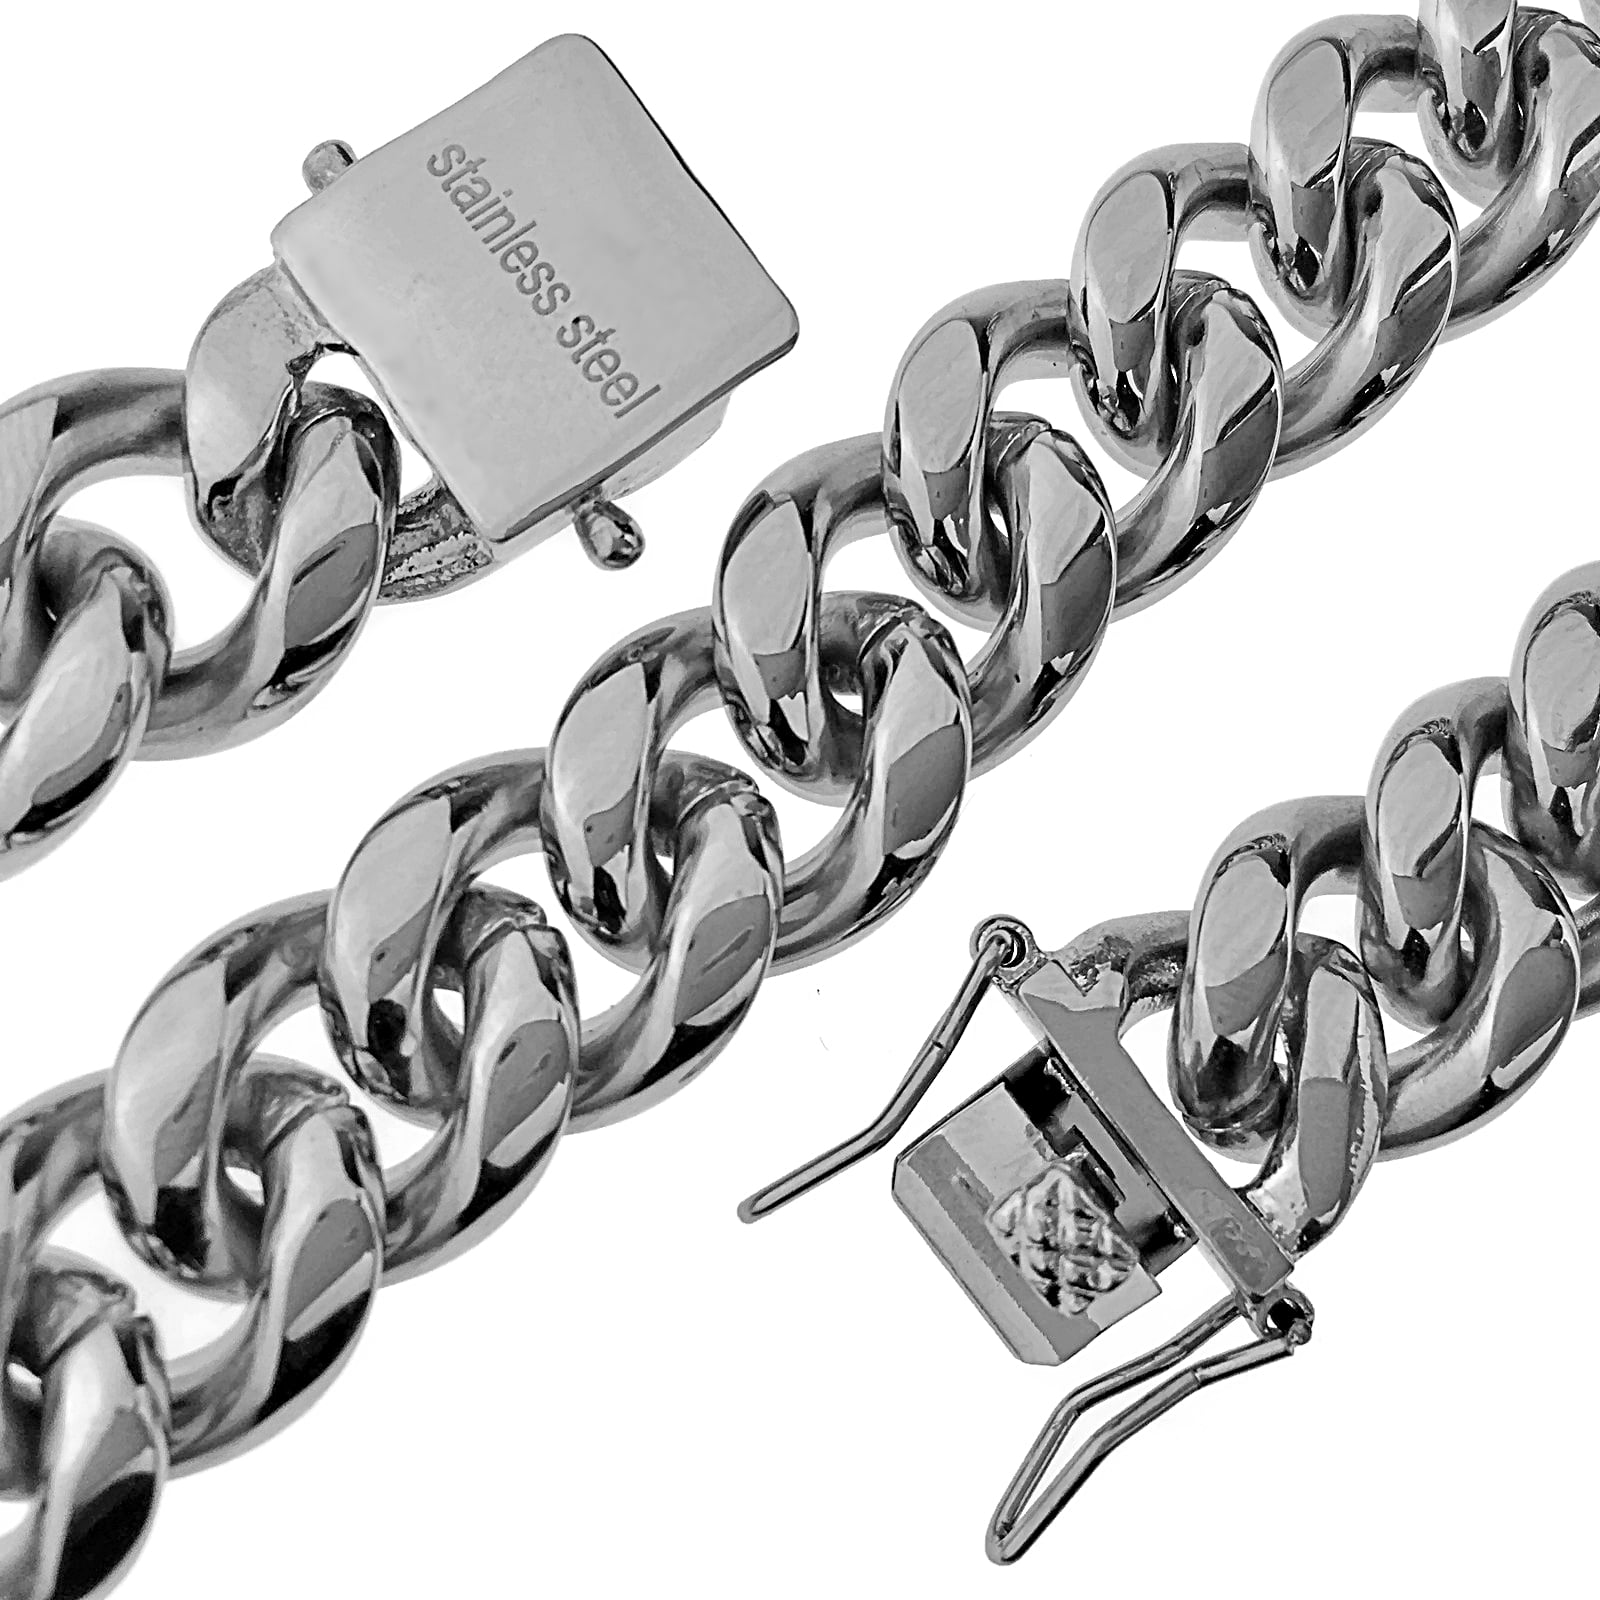 Bulk Chains Bulk Necklaces Wholesale Chains Silver Chains 16 18 Inch  Chains 26 Satellite Chains 20 Inch Chains Silver Plated Chains 12pcs